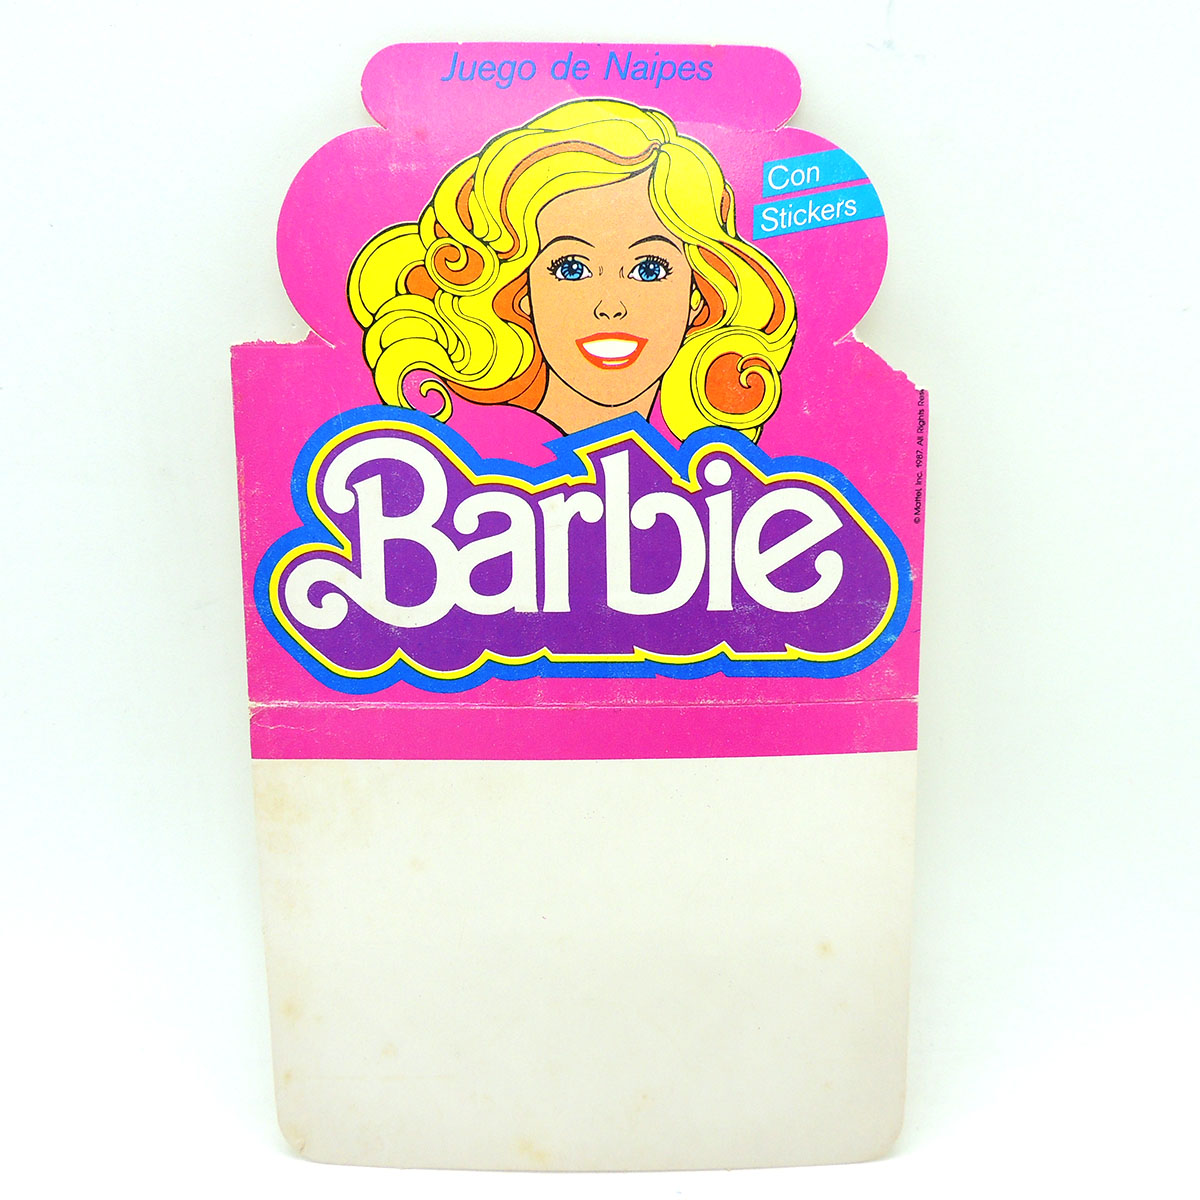 Cromy Barbie Carton del Juego de Naipes Cartas Original Vintage - Madtoyz